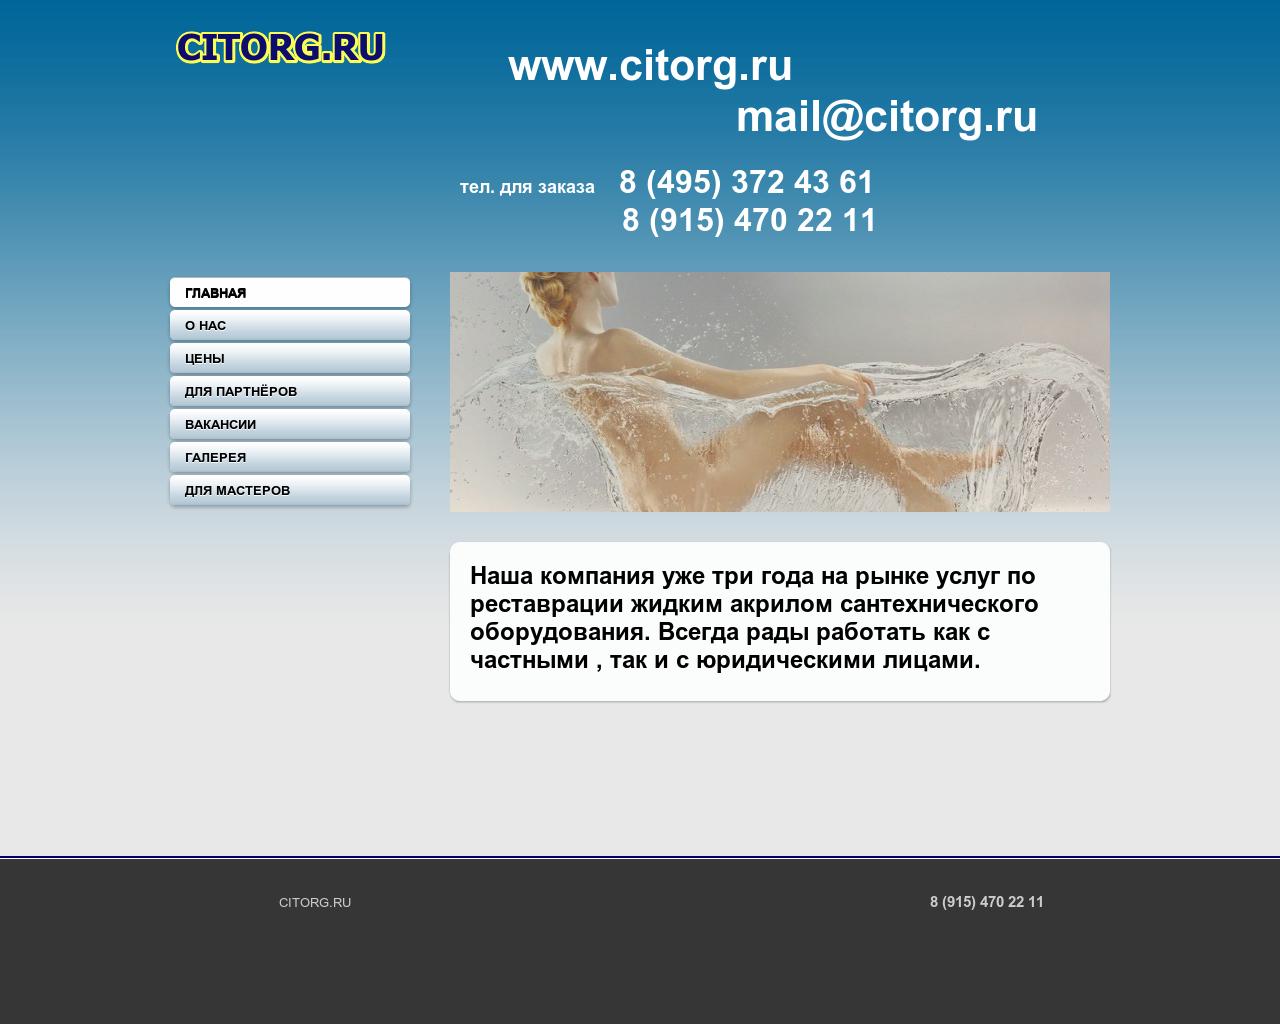 Изображение сайта citorg.ru в разрешении 1280x1024